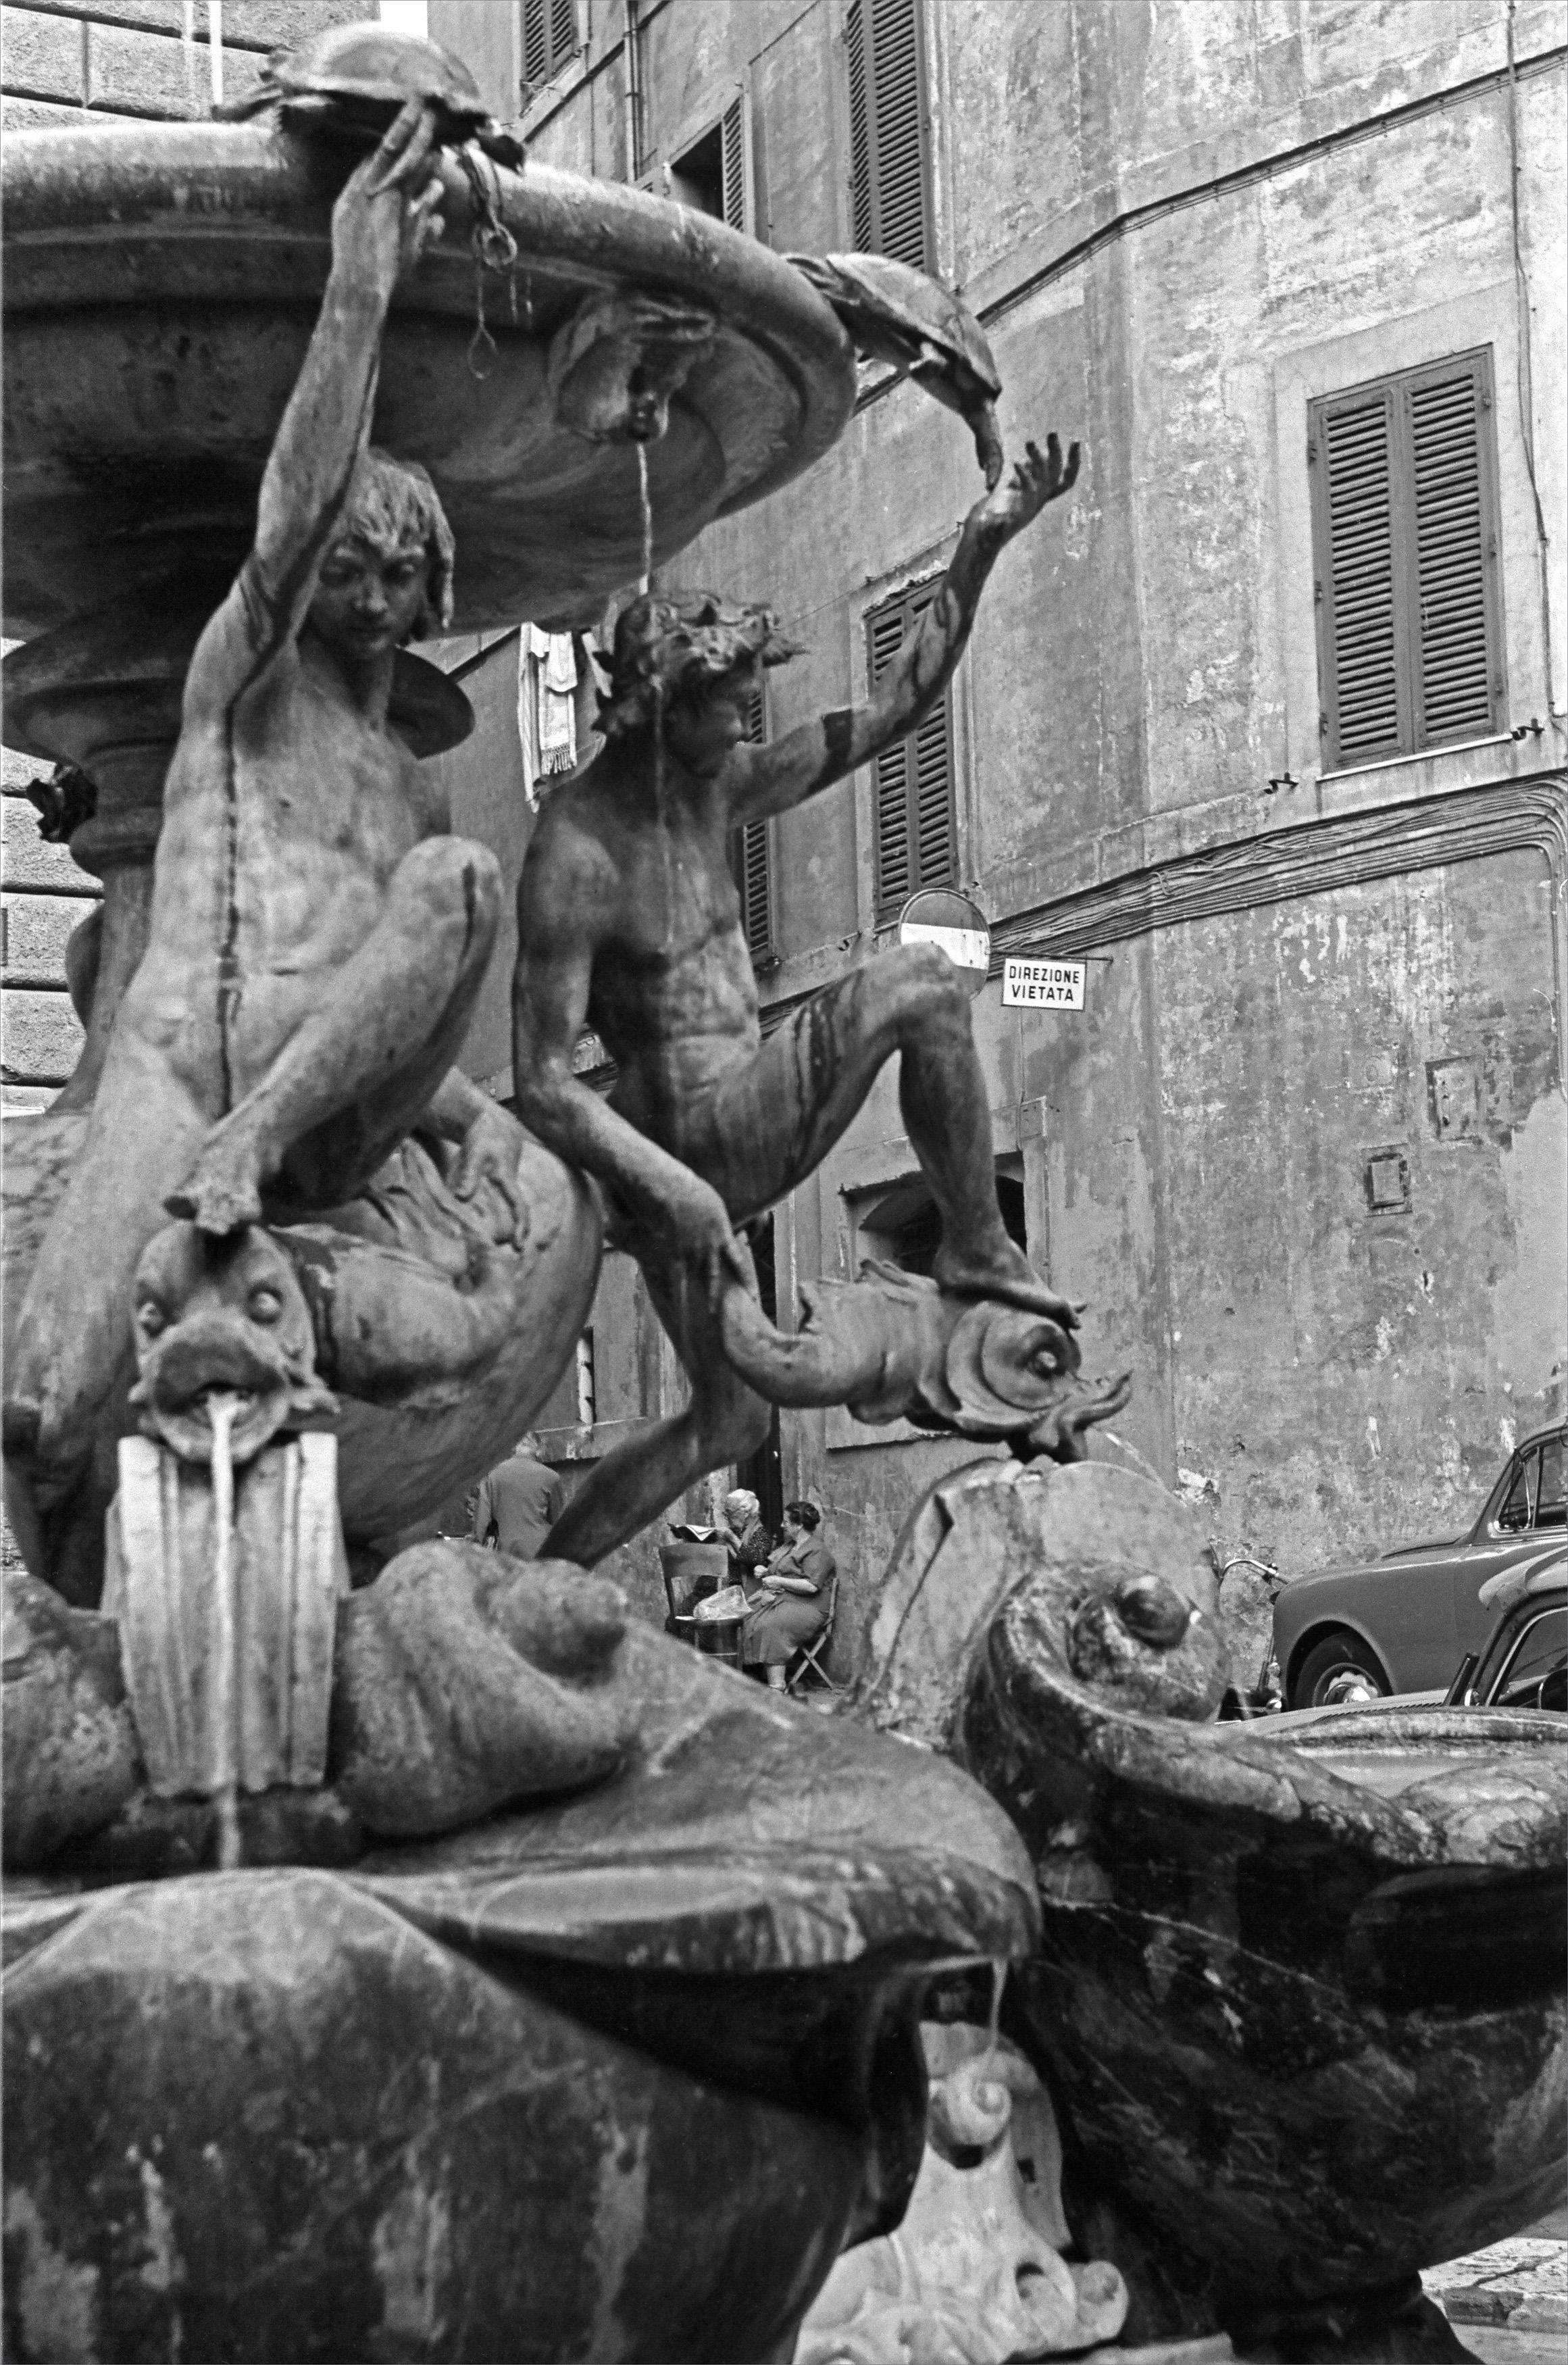 Fabrizio La Torre Black and White Photograph - Chiacchiere in piazza, 1956 - Roma - Contemporary Black & White Photography